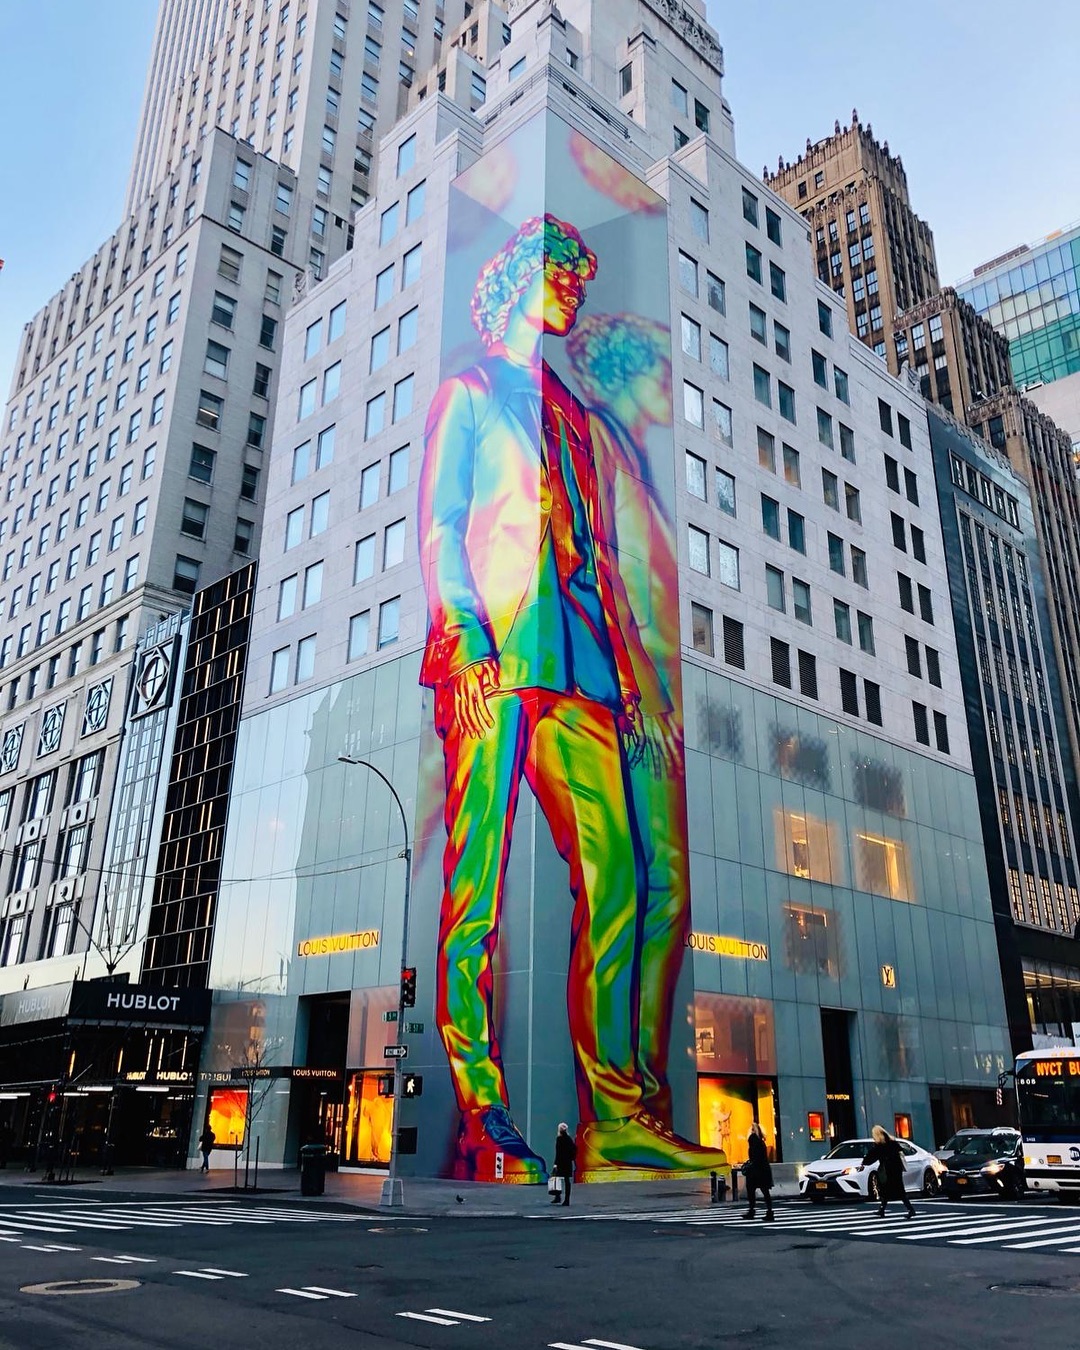 Louis Vuitton Recruits New York Graffiti Legends for a New Milan